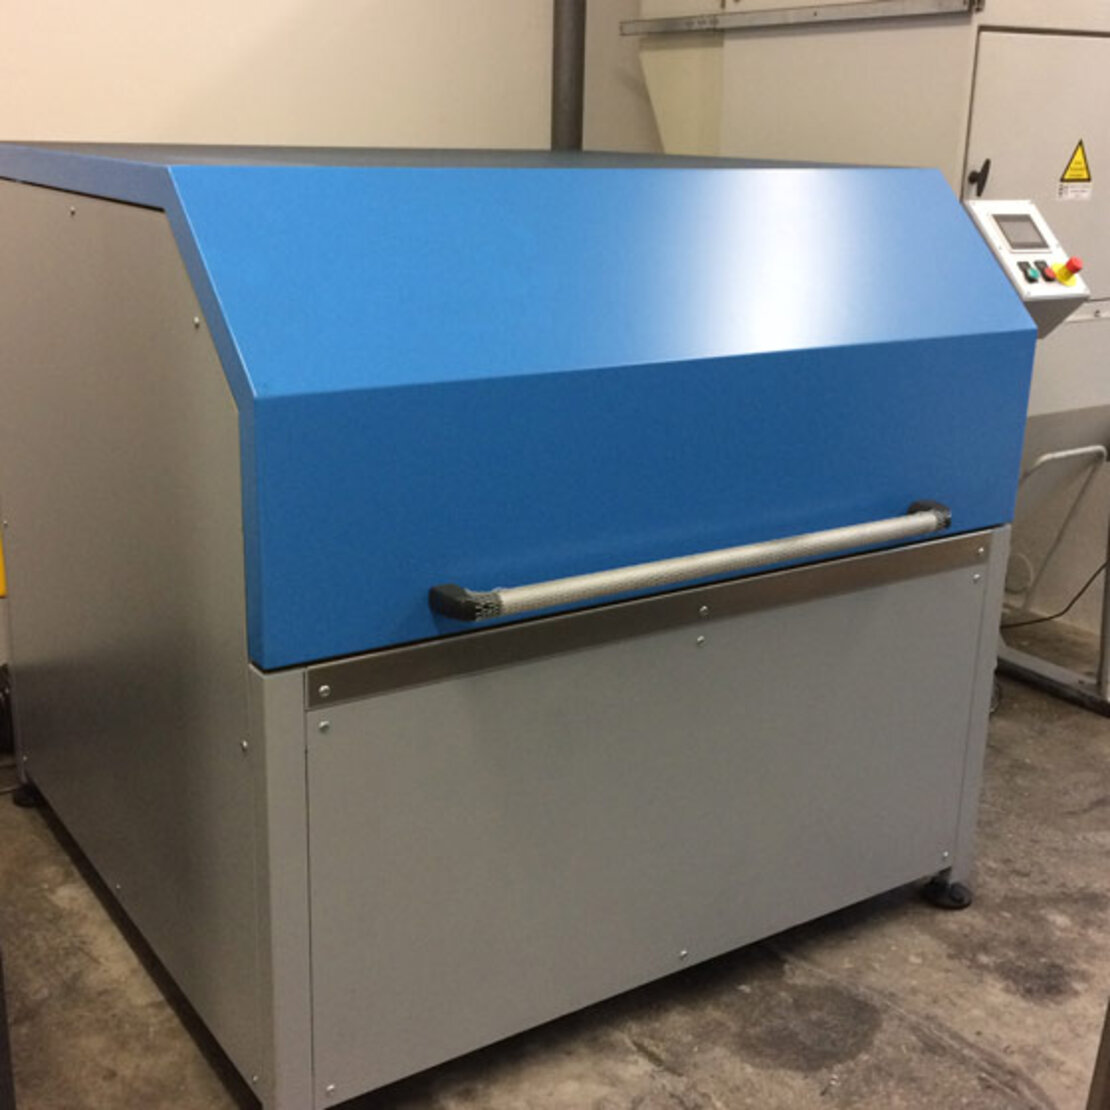 TurboClean 1800 автомат для очистки картриджей с тонером